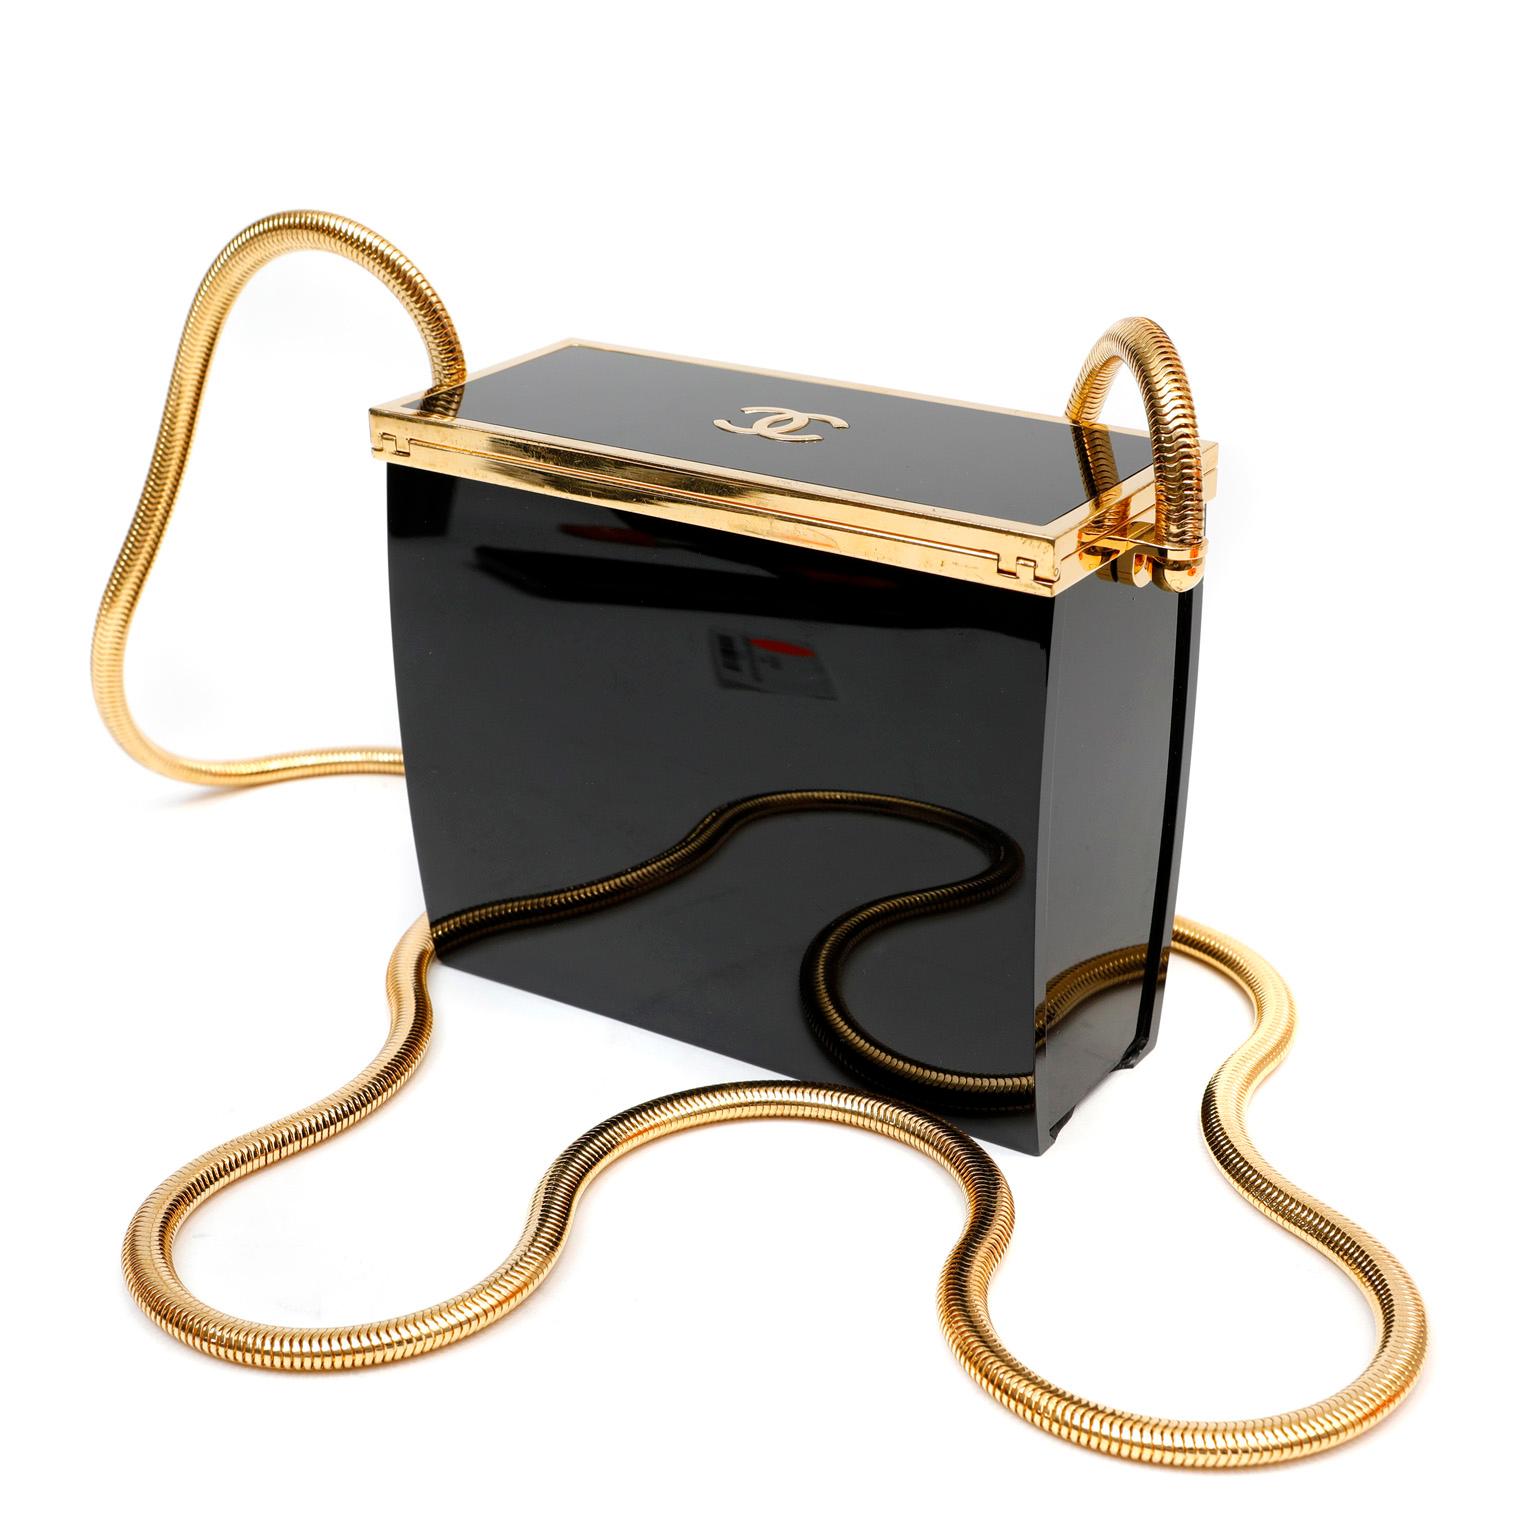 Cet authentique sac du soir Chanel en résine noire est en excellente condition vintage de la fin des années 1980. Une pièce rare qui est un must pour tout collectionneur. Le sac structuré rectangulaire en résine noire polie est bordé d'éléments en